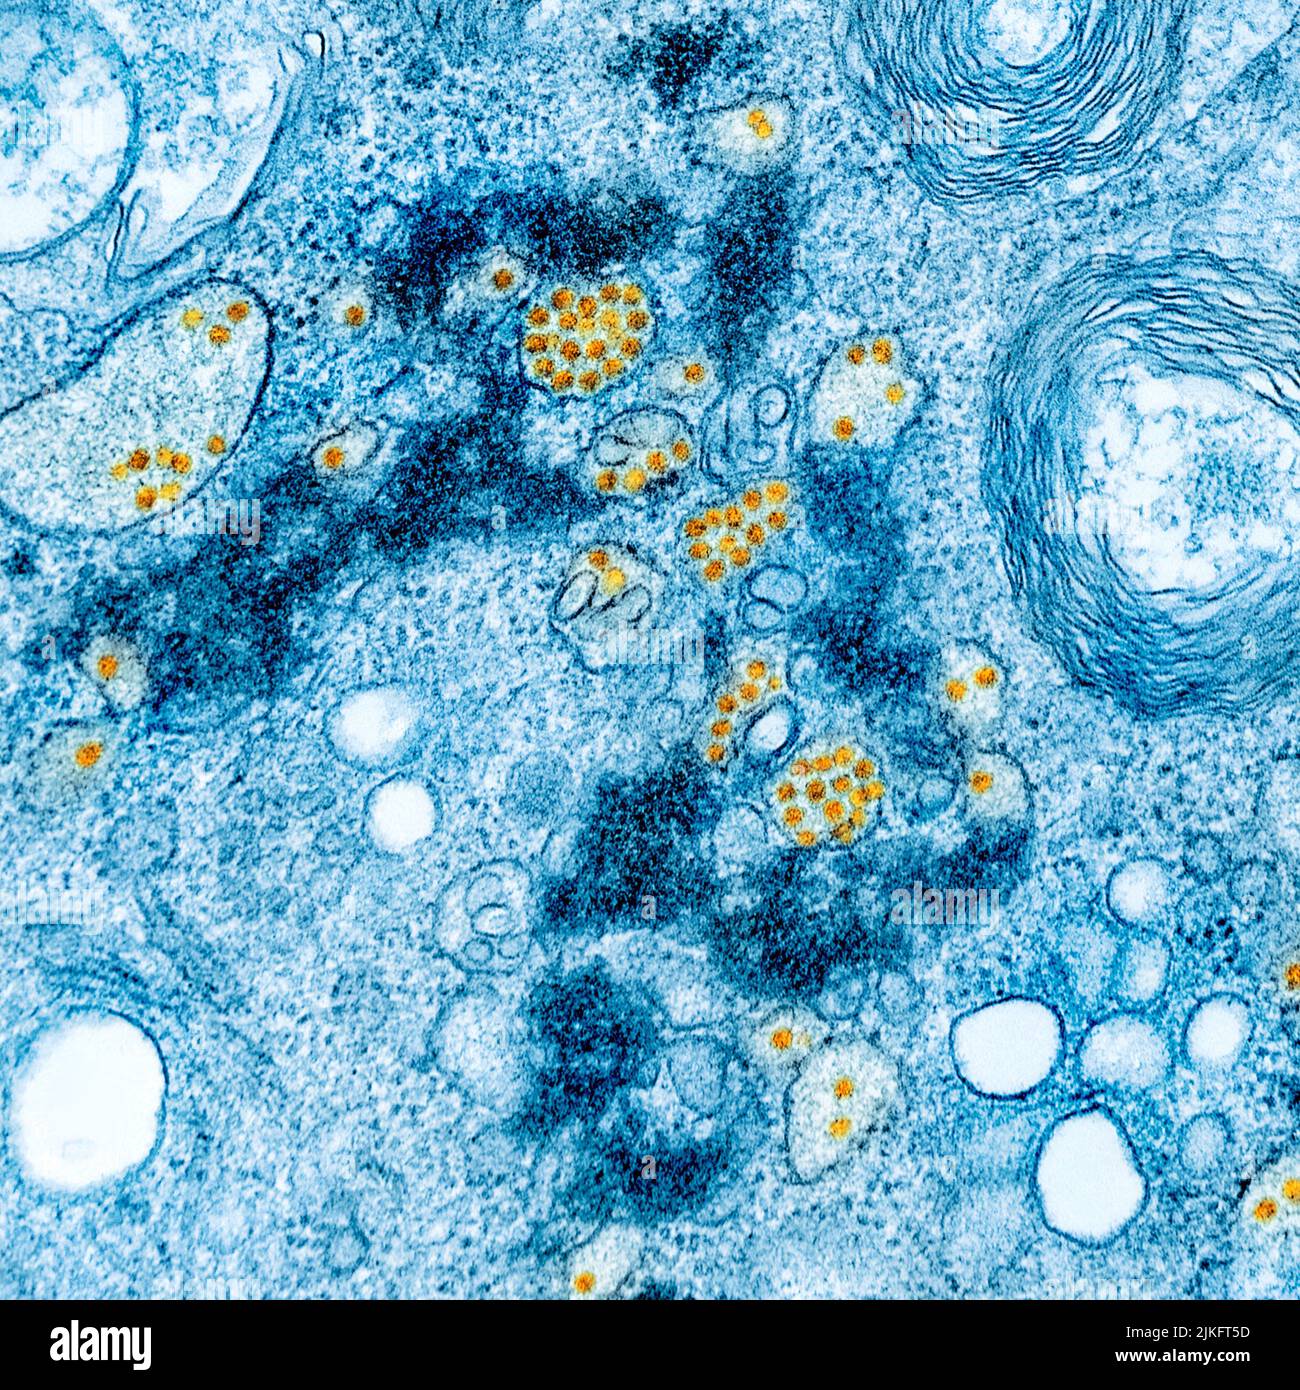 Micrografia elettronica a trasmissione colorata di cellule vero E6 coltivate infettate con particelle di virus della febbre gialla che si trovano in regioni distese del reticolo endoplasmatico. Immagine acquistata e migliorata dal colore presso il NIAID Integrated Research Facility (IRF) a Fort Detrick, Maryland. Credito: NIAID Foto Stock